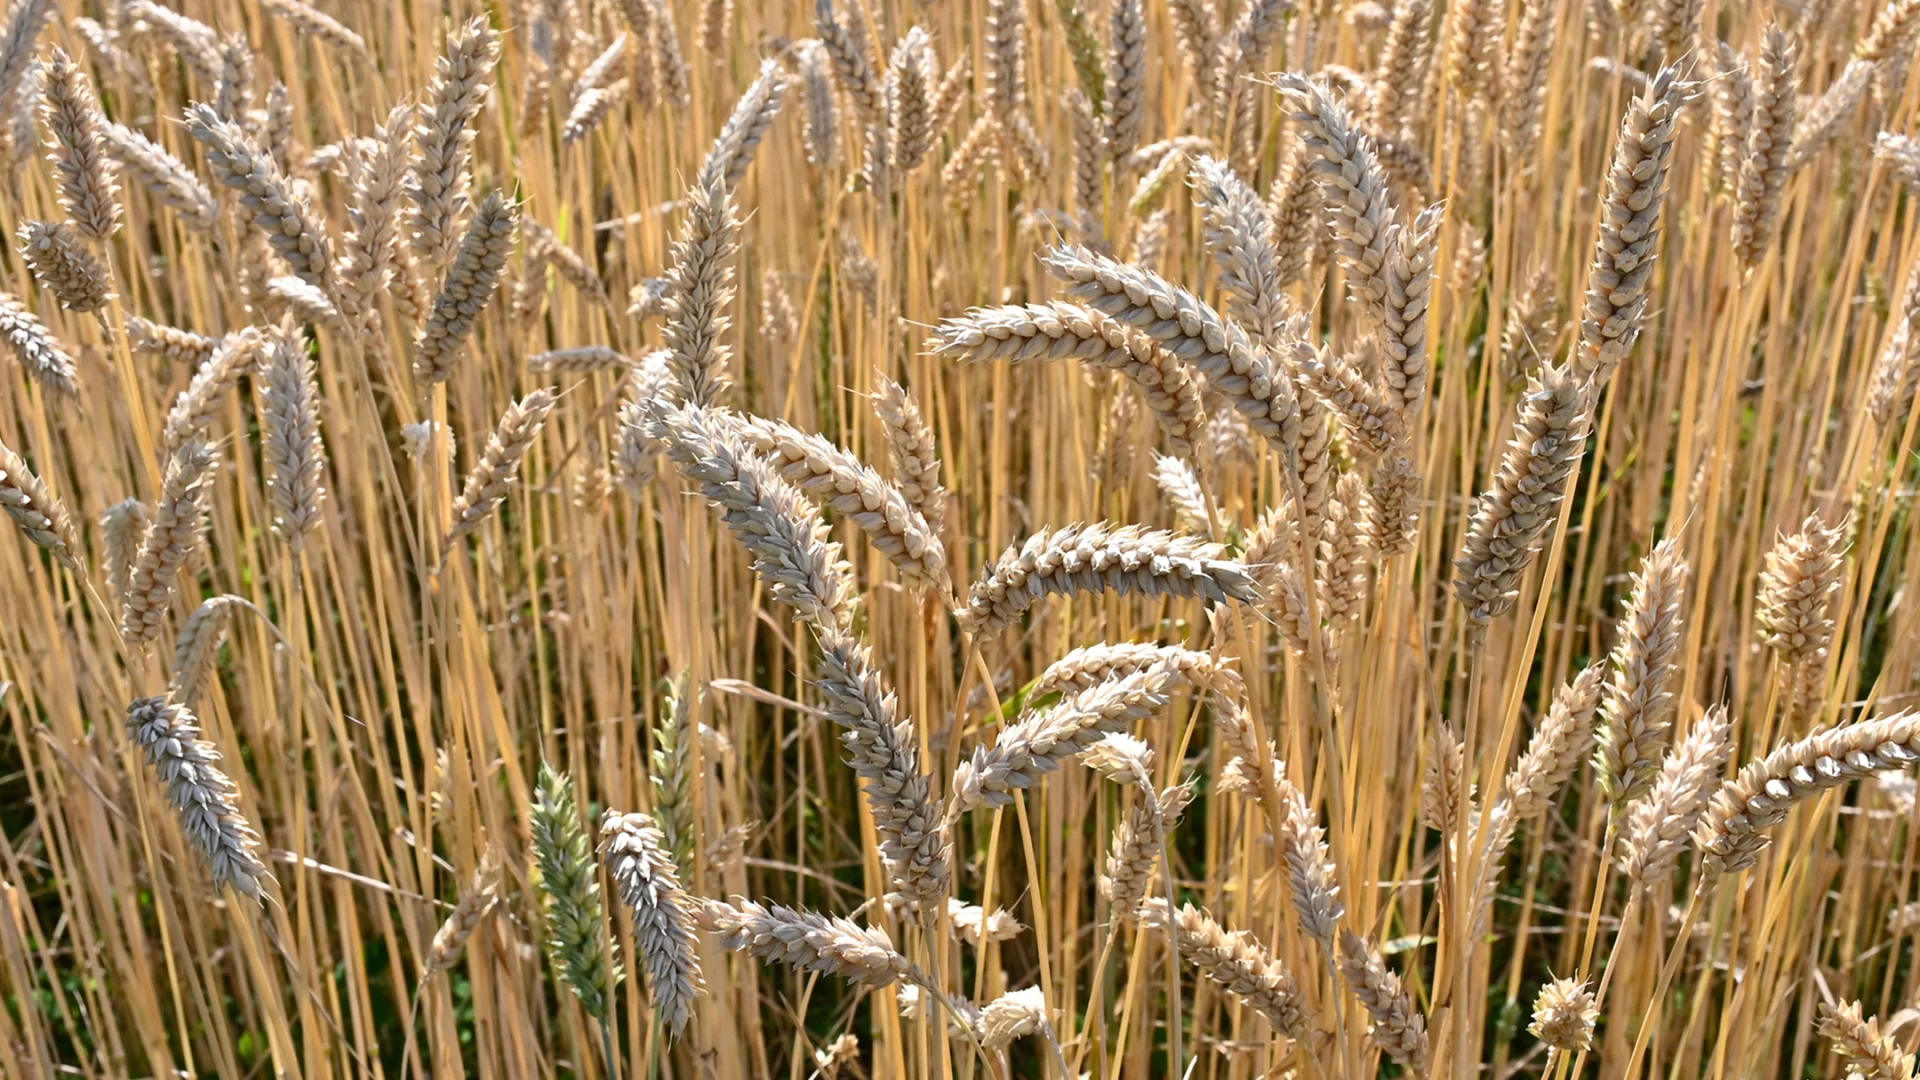 Wheat in a wheat field